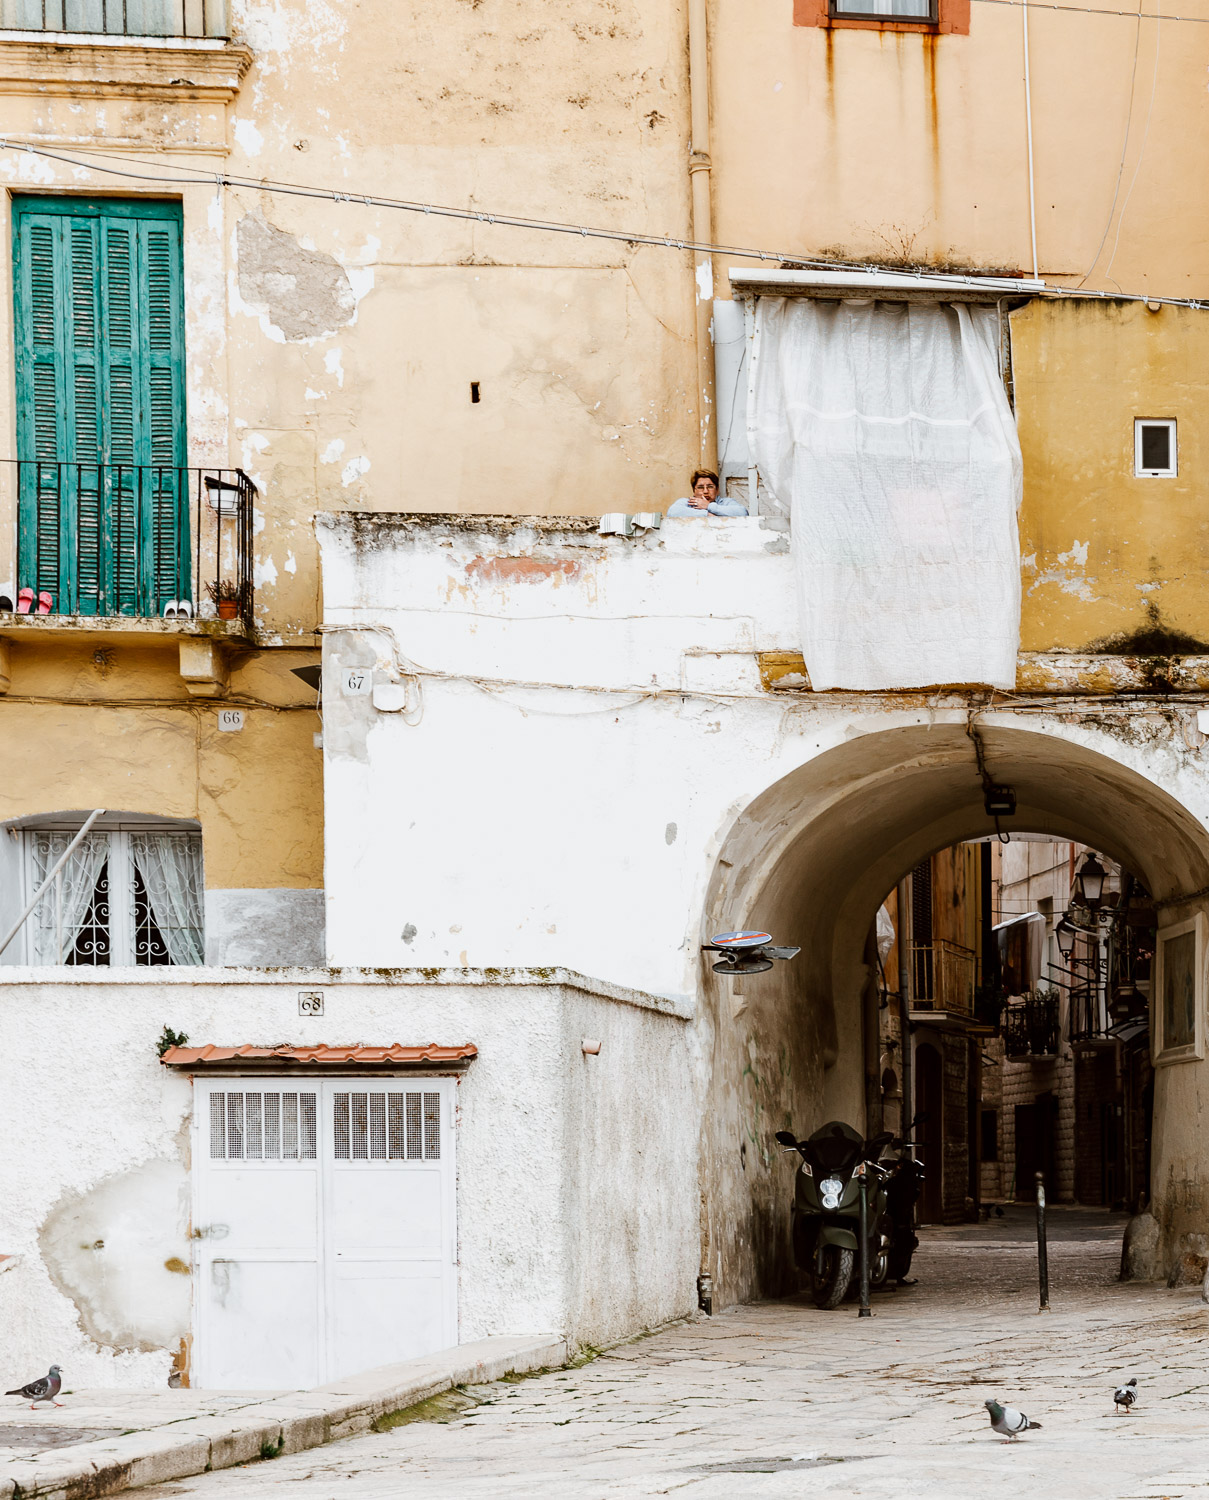 Our Guide to Bari in Puglia